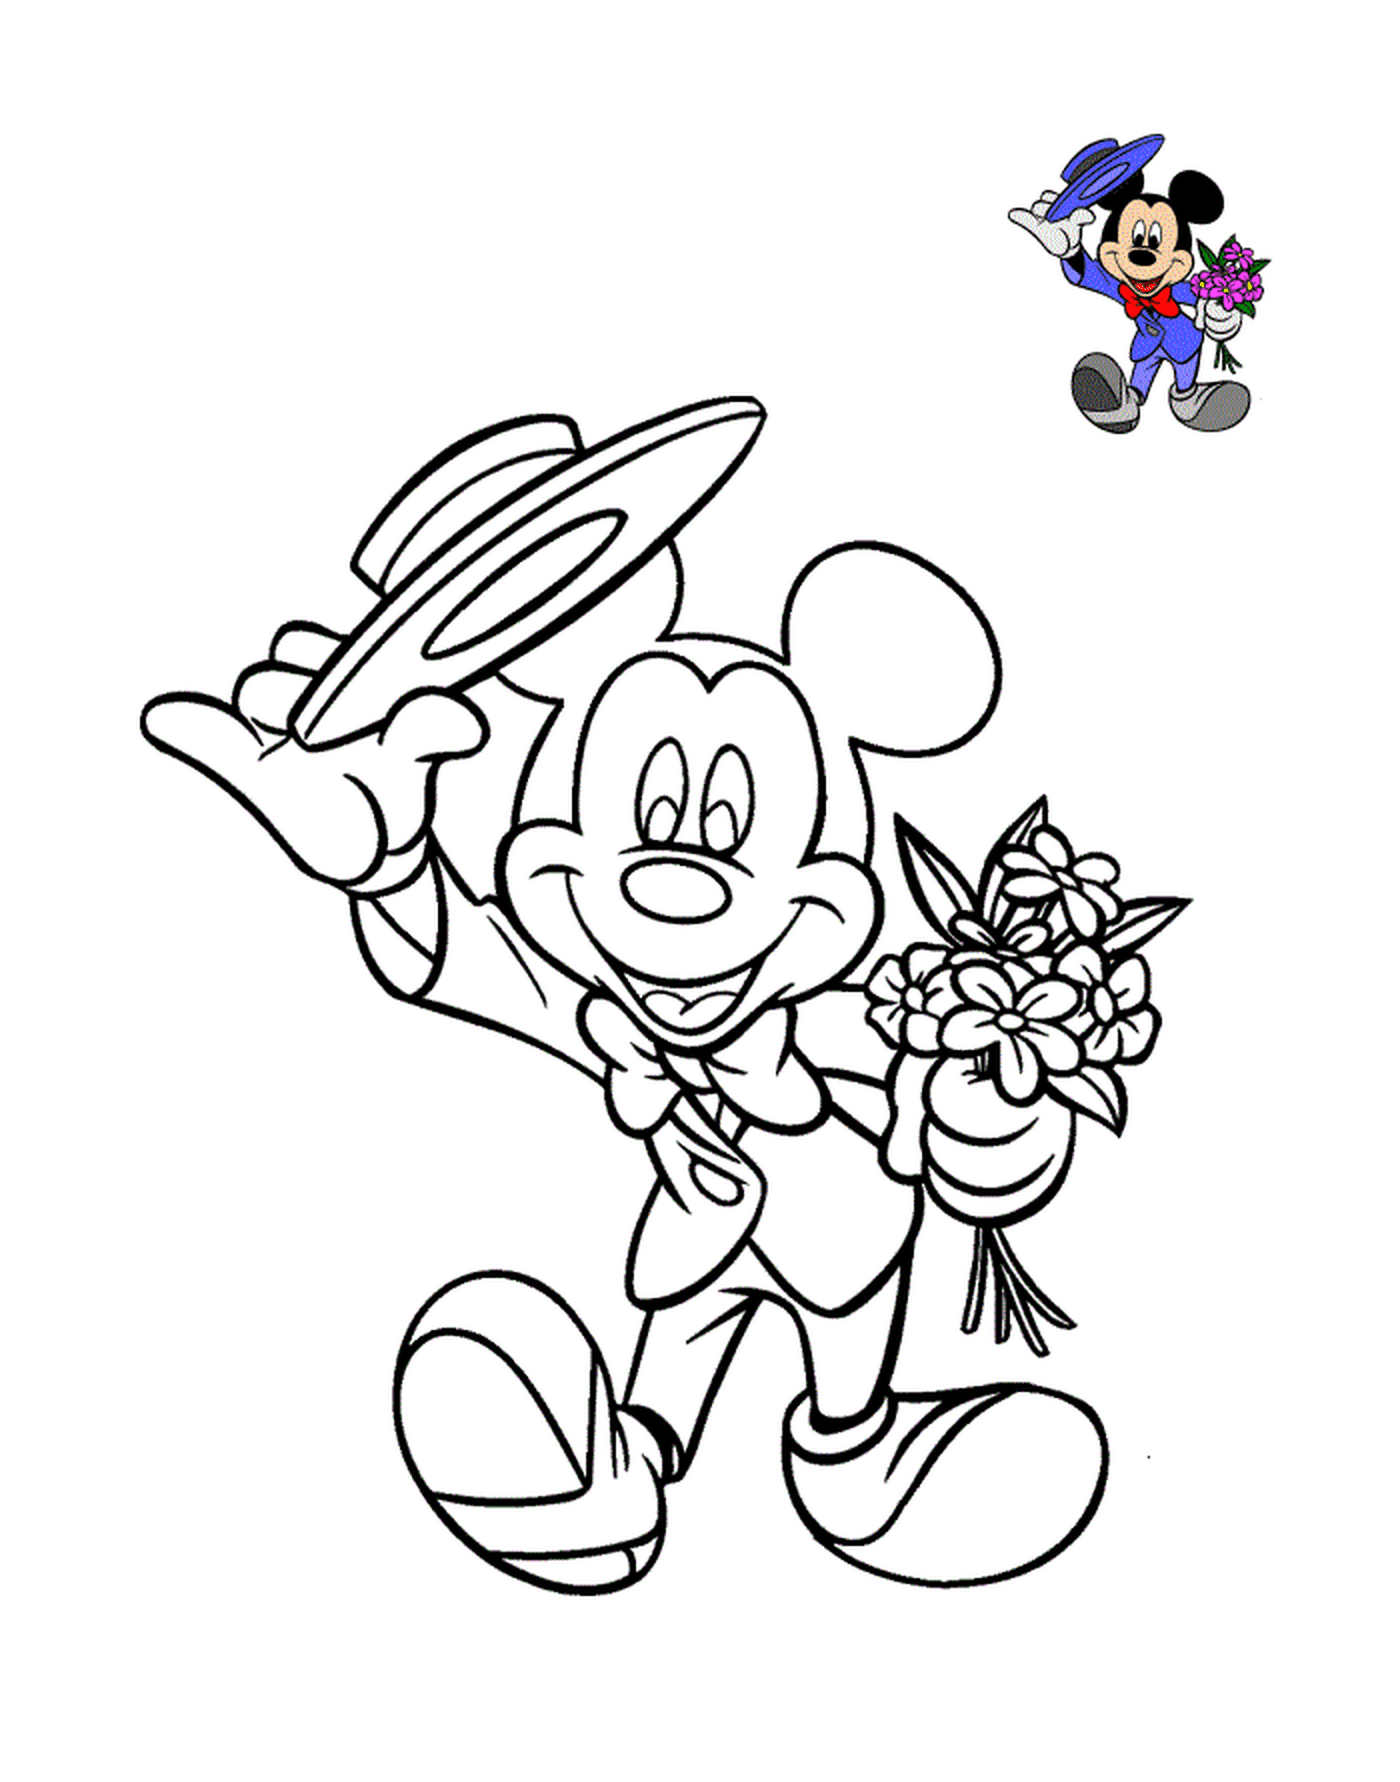  Liebenswert Mickey Maus mit Kostüm und Blumen 